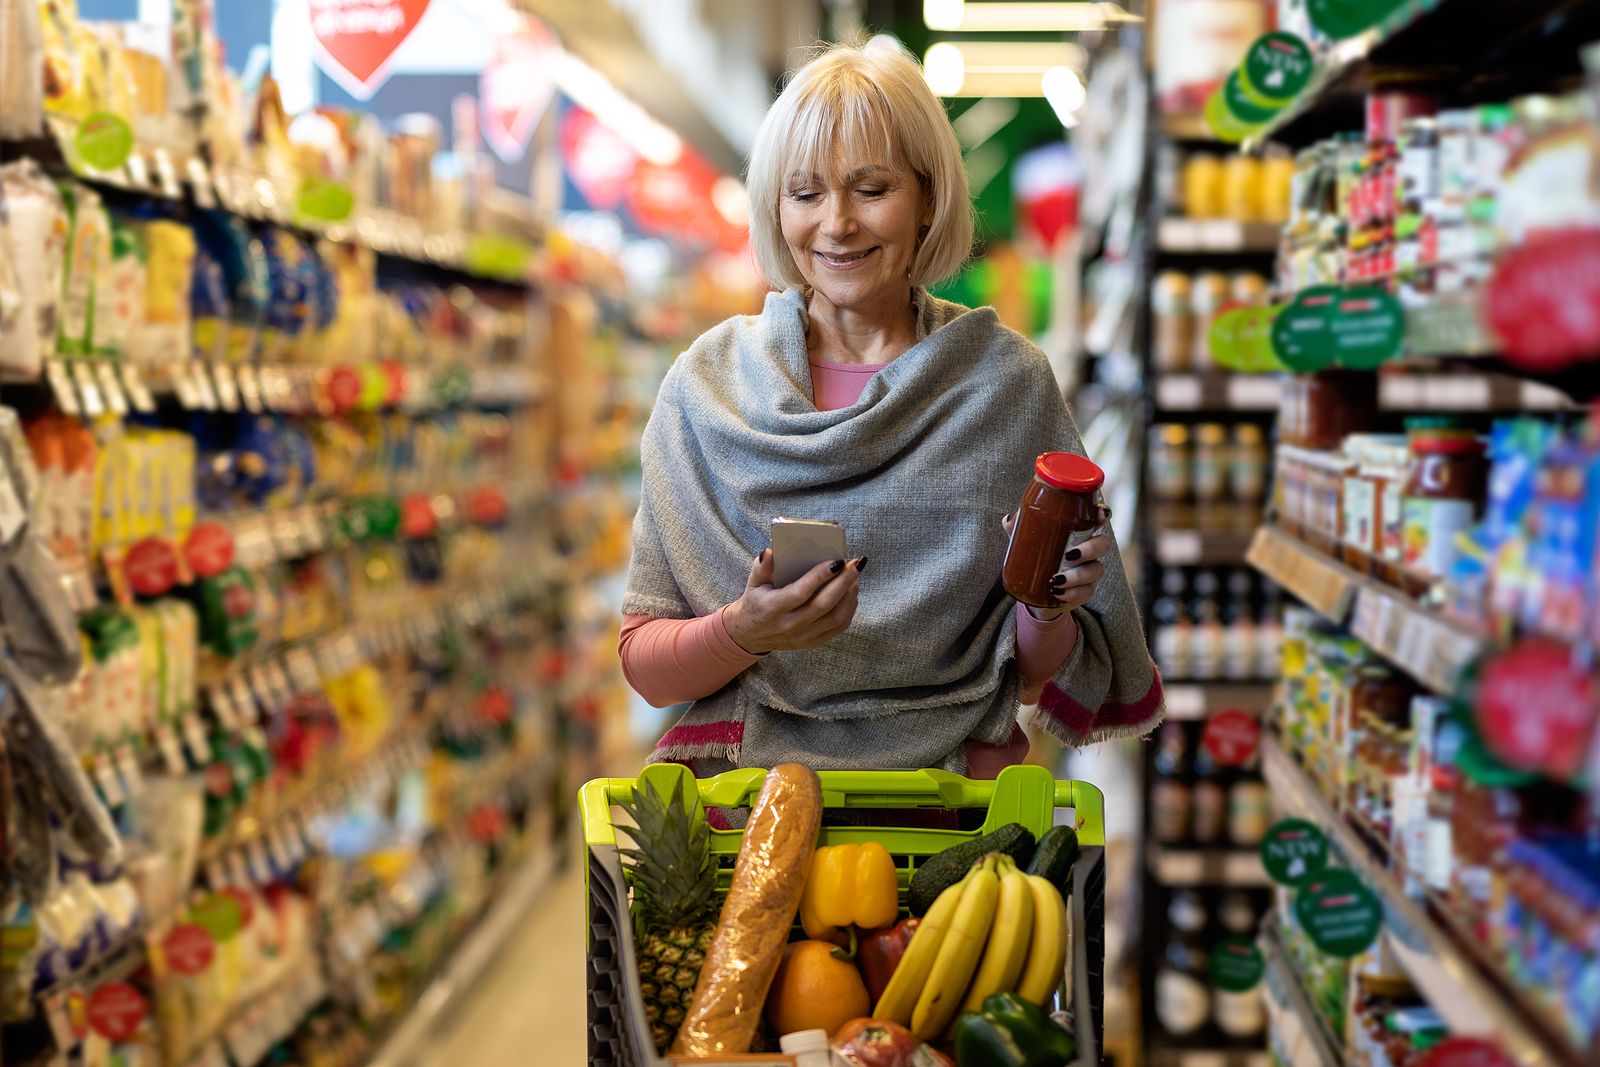 Estos son los supermercados que generan más emociones positivas entre sus clientes y los que menos